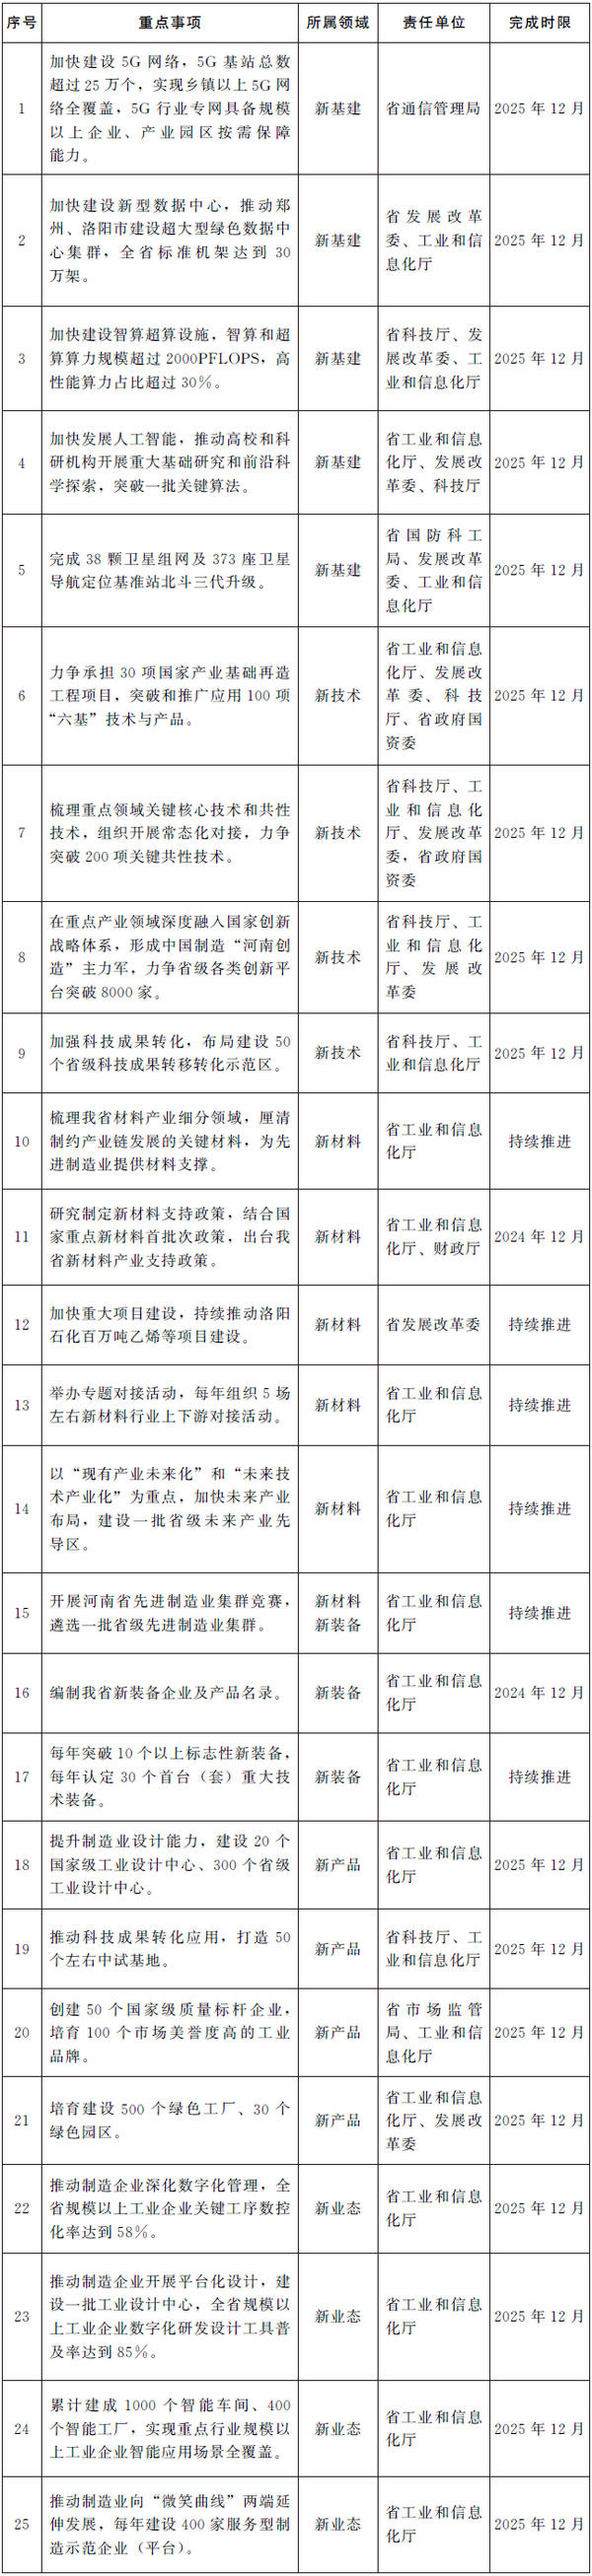 河南省人民政府办公厅关于印发河南省加快制造业“六新”突破实施方案的通知